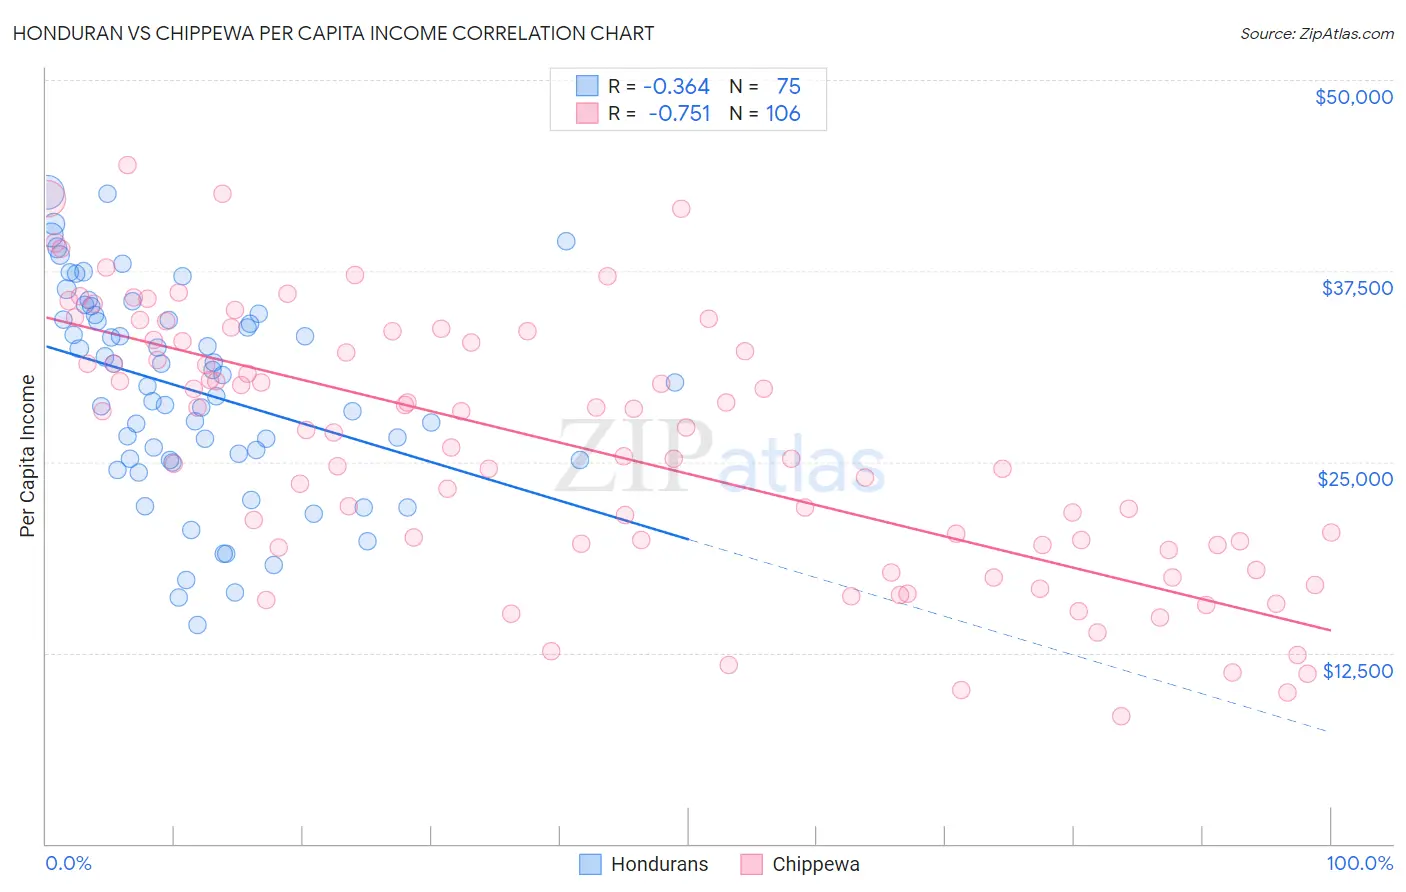 Honduran vs Chippewa Per Capita Income